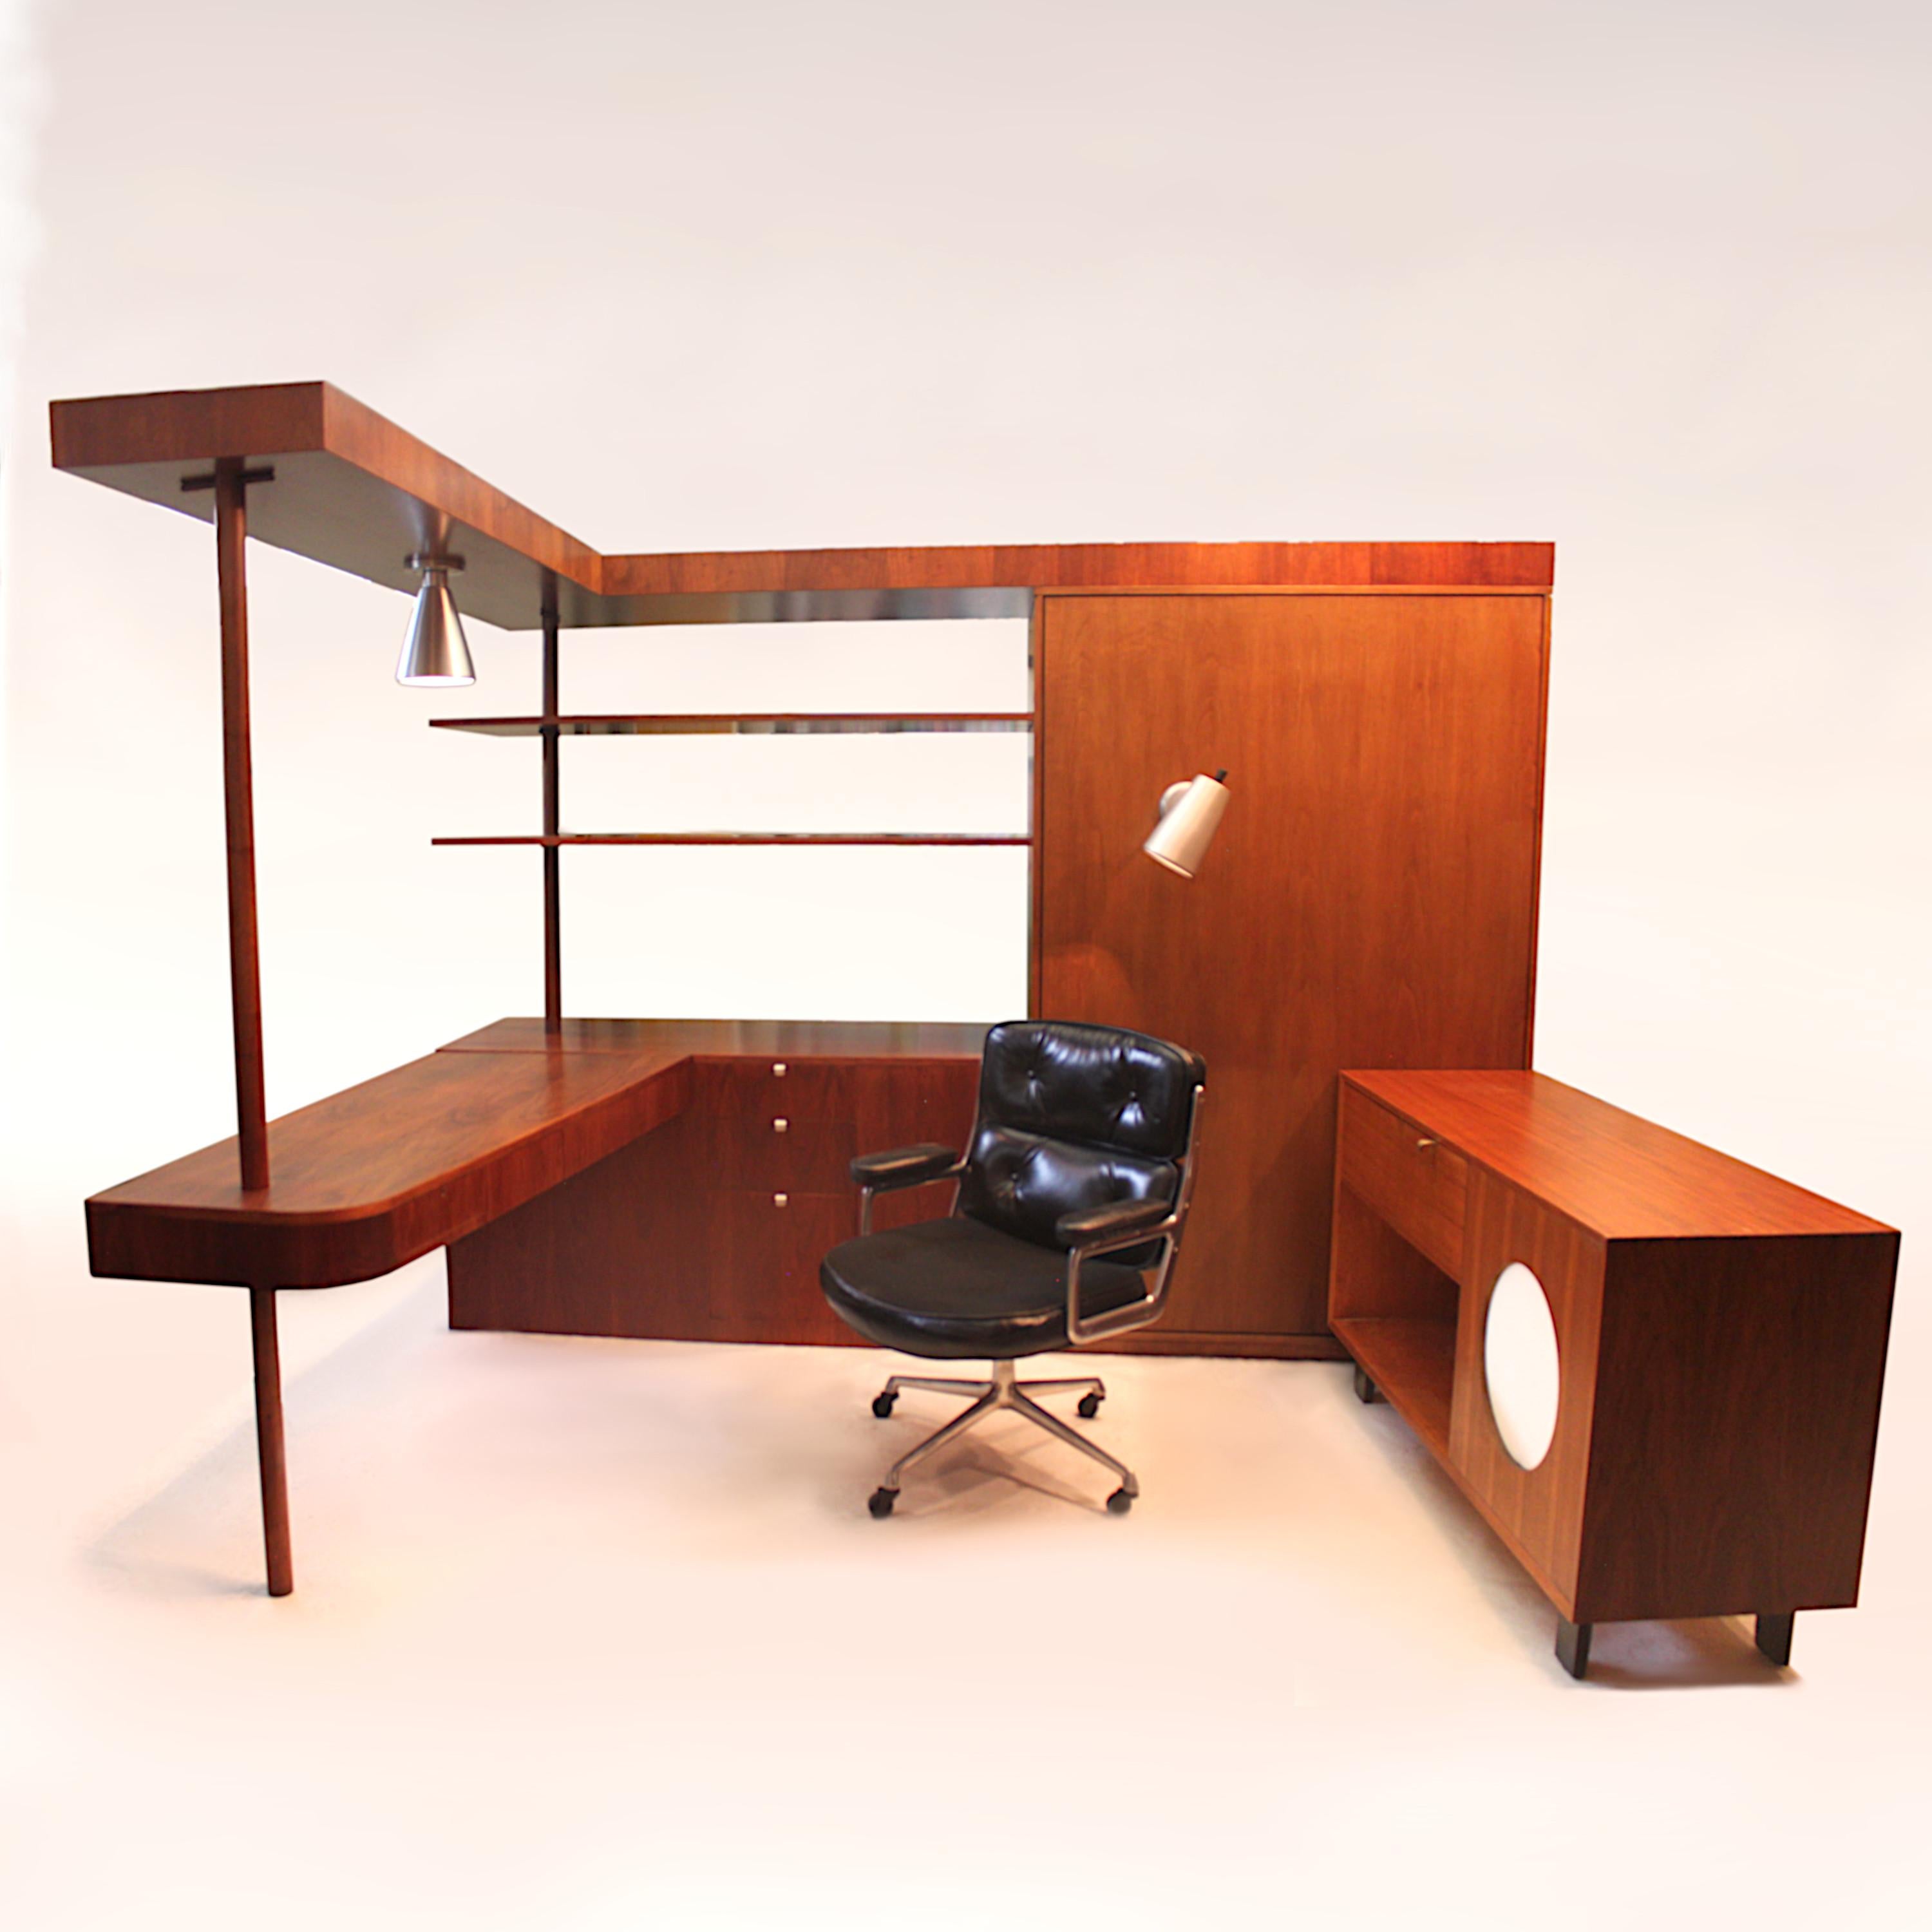 Cette pièce remarquable est un bureau, une armoire, un bar, une bibliothèque et un meuble de rangement uniques, conçus sur mesure par George Nelson en 1949 pour s'adapter à sa série de meubles de base (BCS) pour Herman Miller. Ce bureau a été